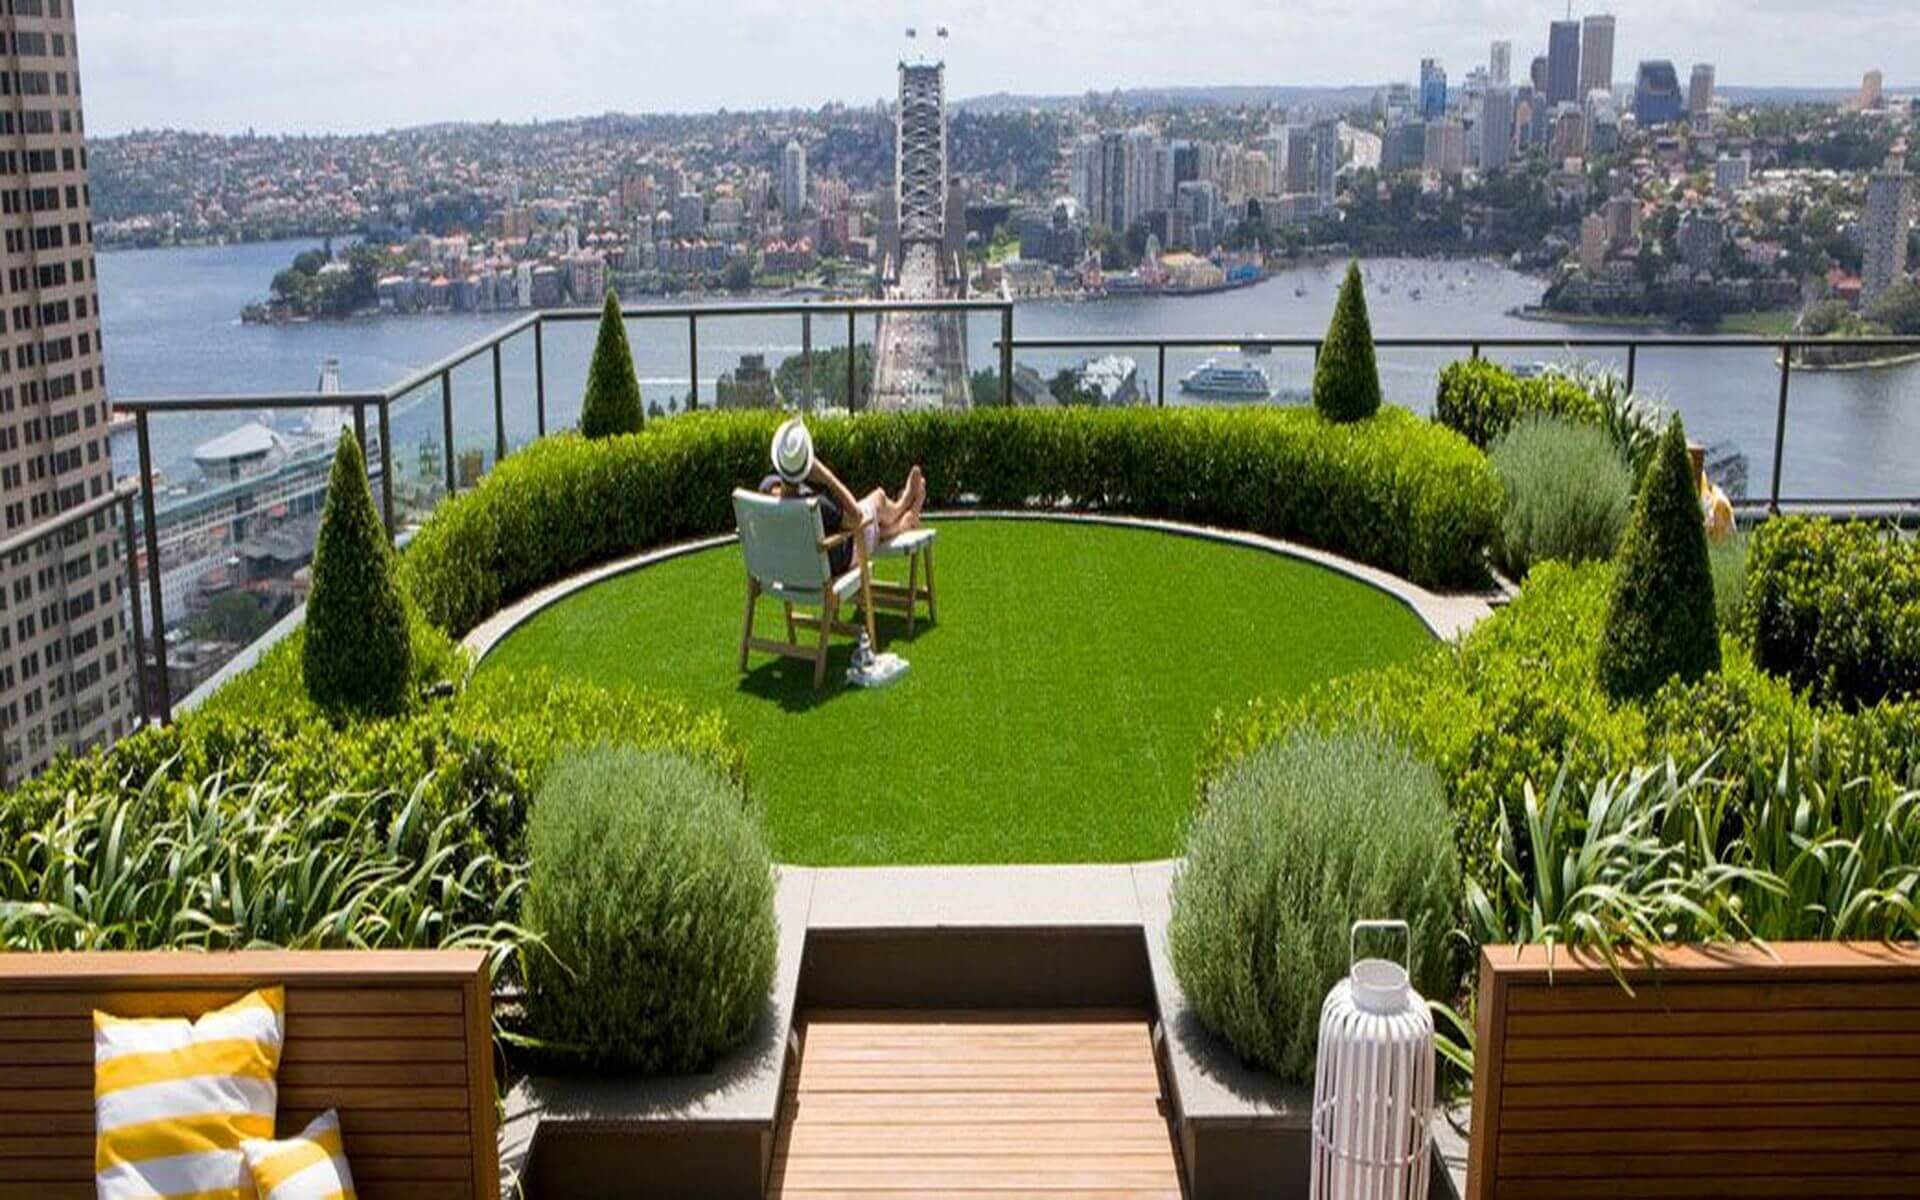 The Terrace Garden